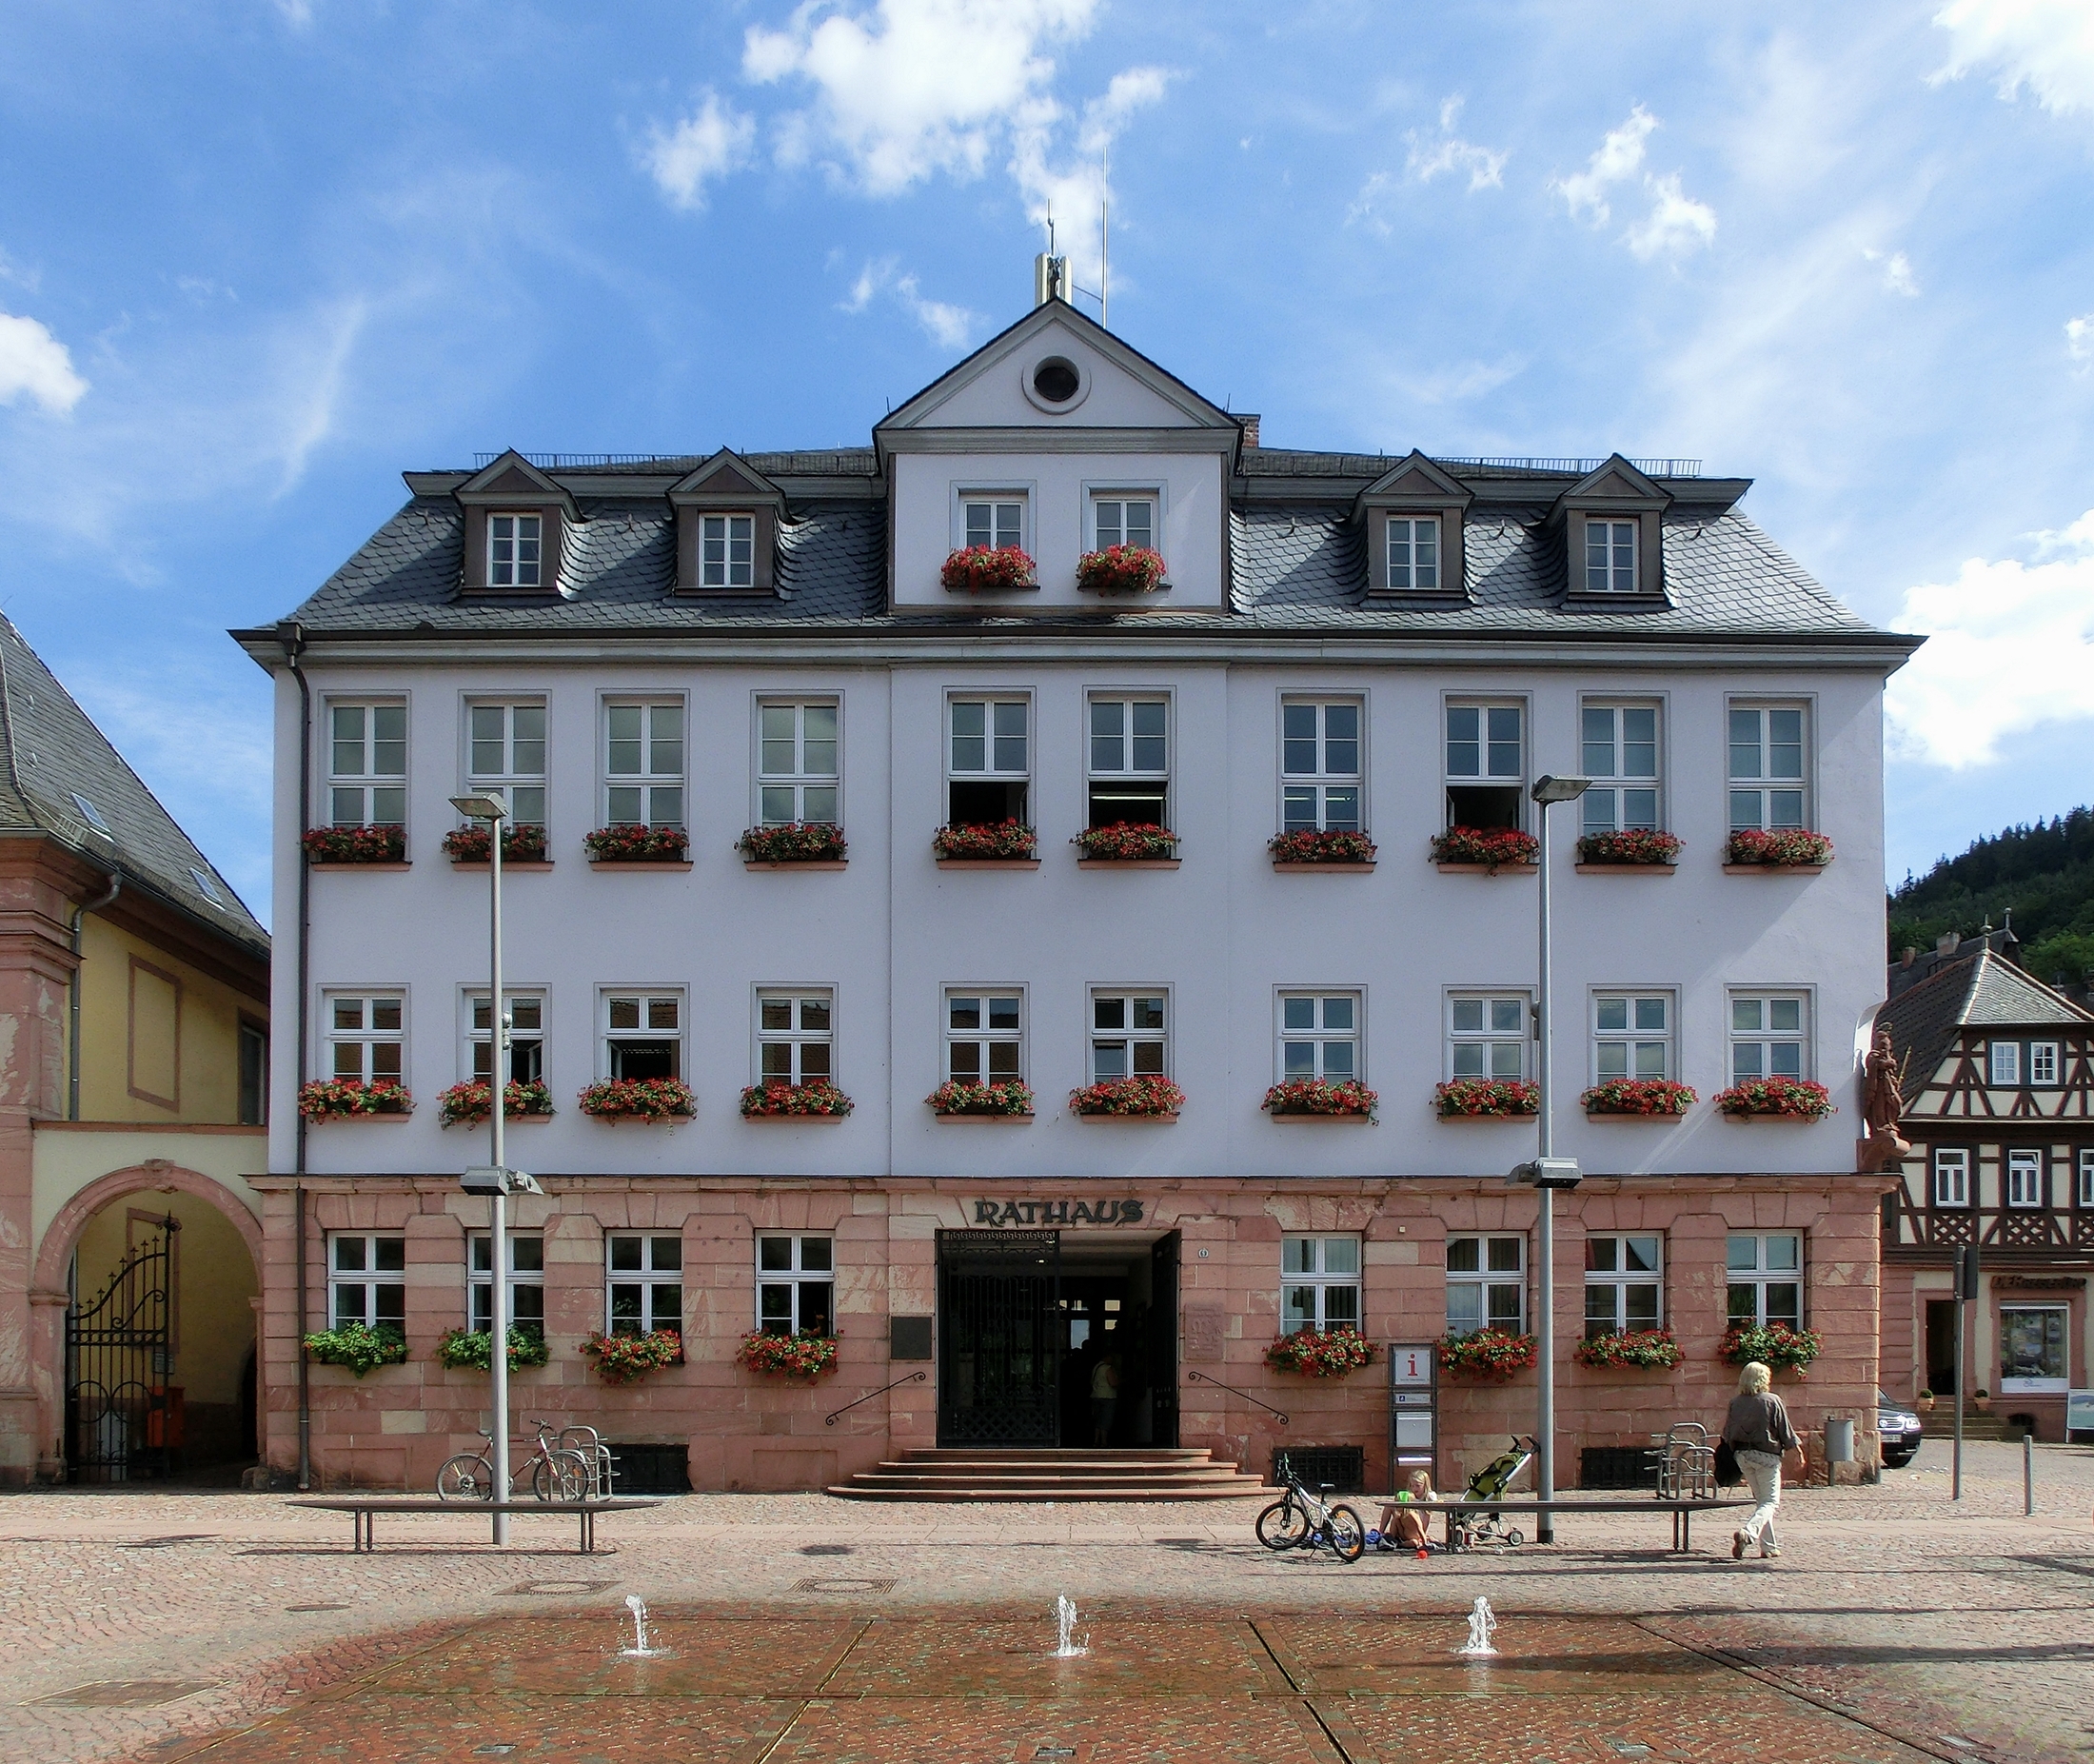 Rathaus Miltenberg 2012